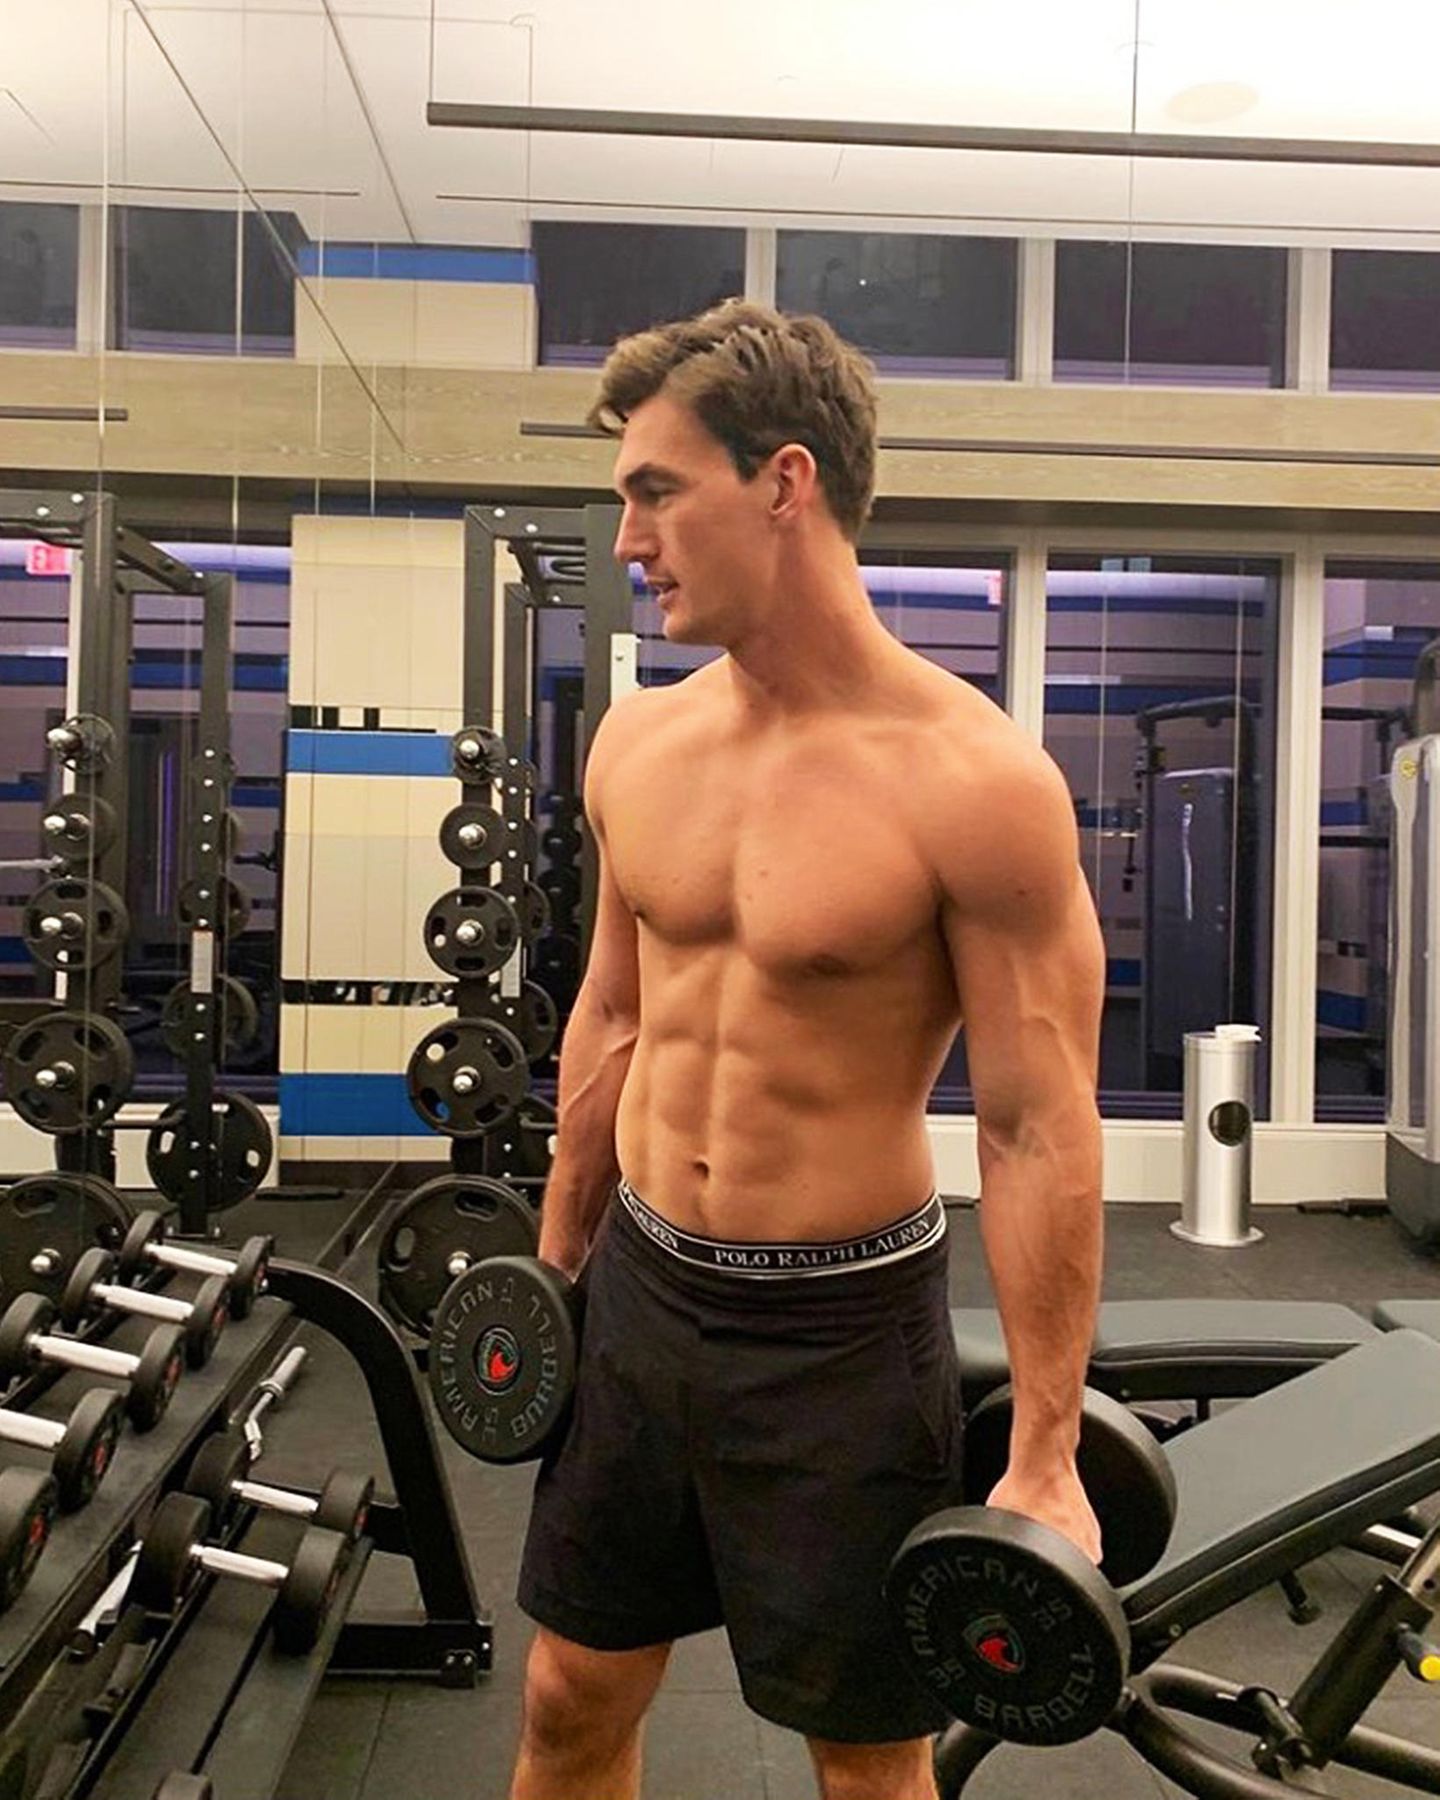 Im Fitness-Studio von Male Model und Gigi-Hadid-Ex Tyler Cameron darf man wohl oben ohne trainieren. Und der Anblick dieses Sixpacks dürfte seine 2,2 Mio. Instagram-Follower erfreuen.